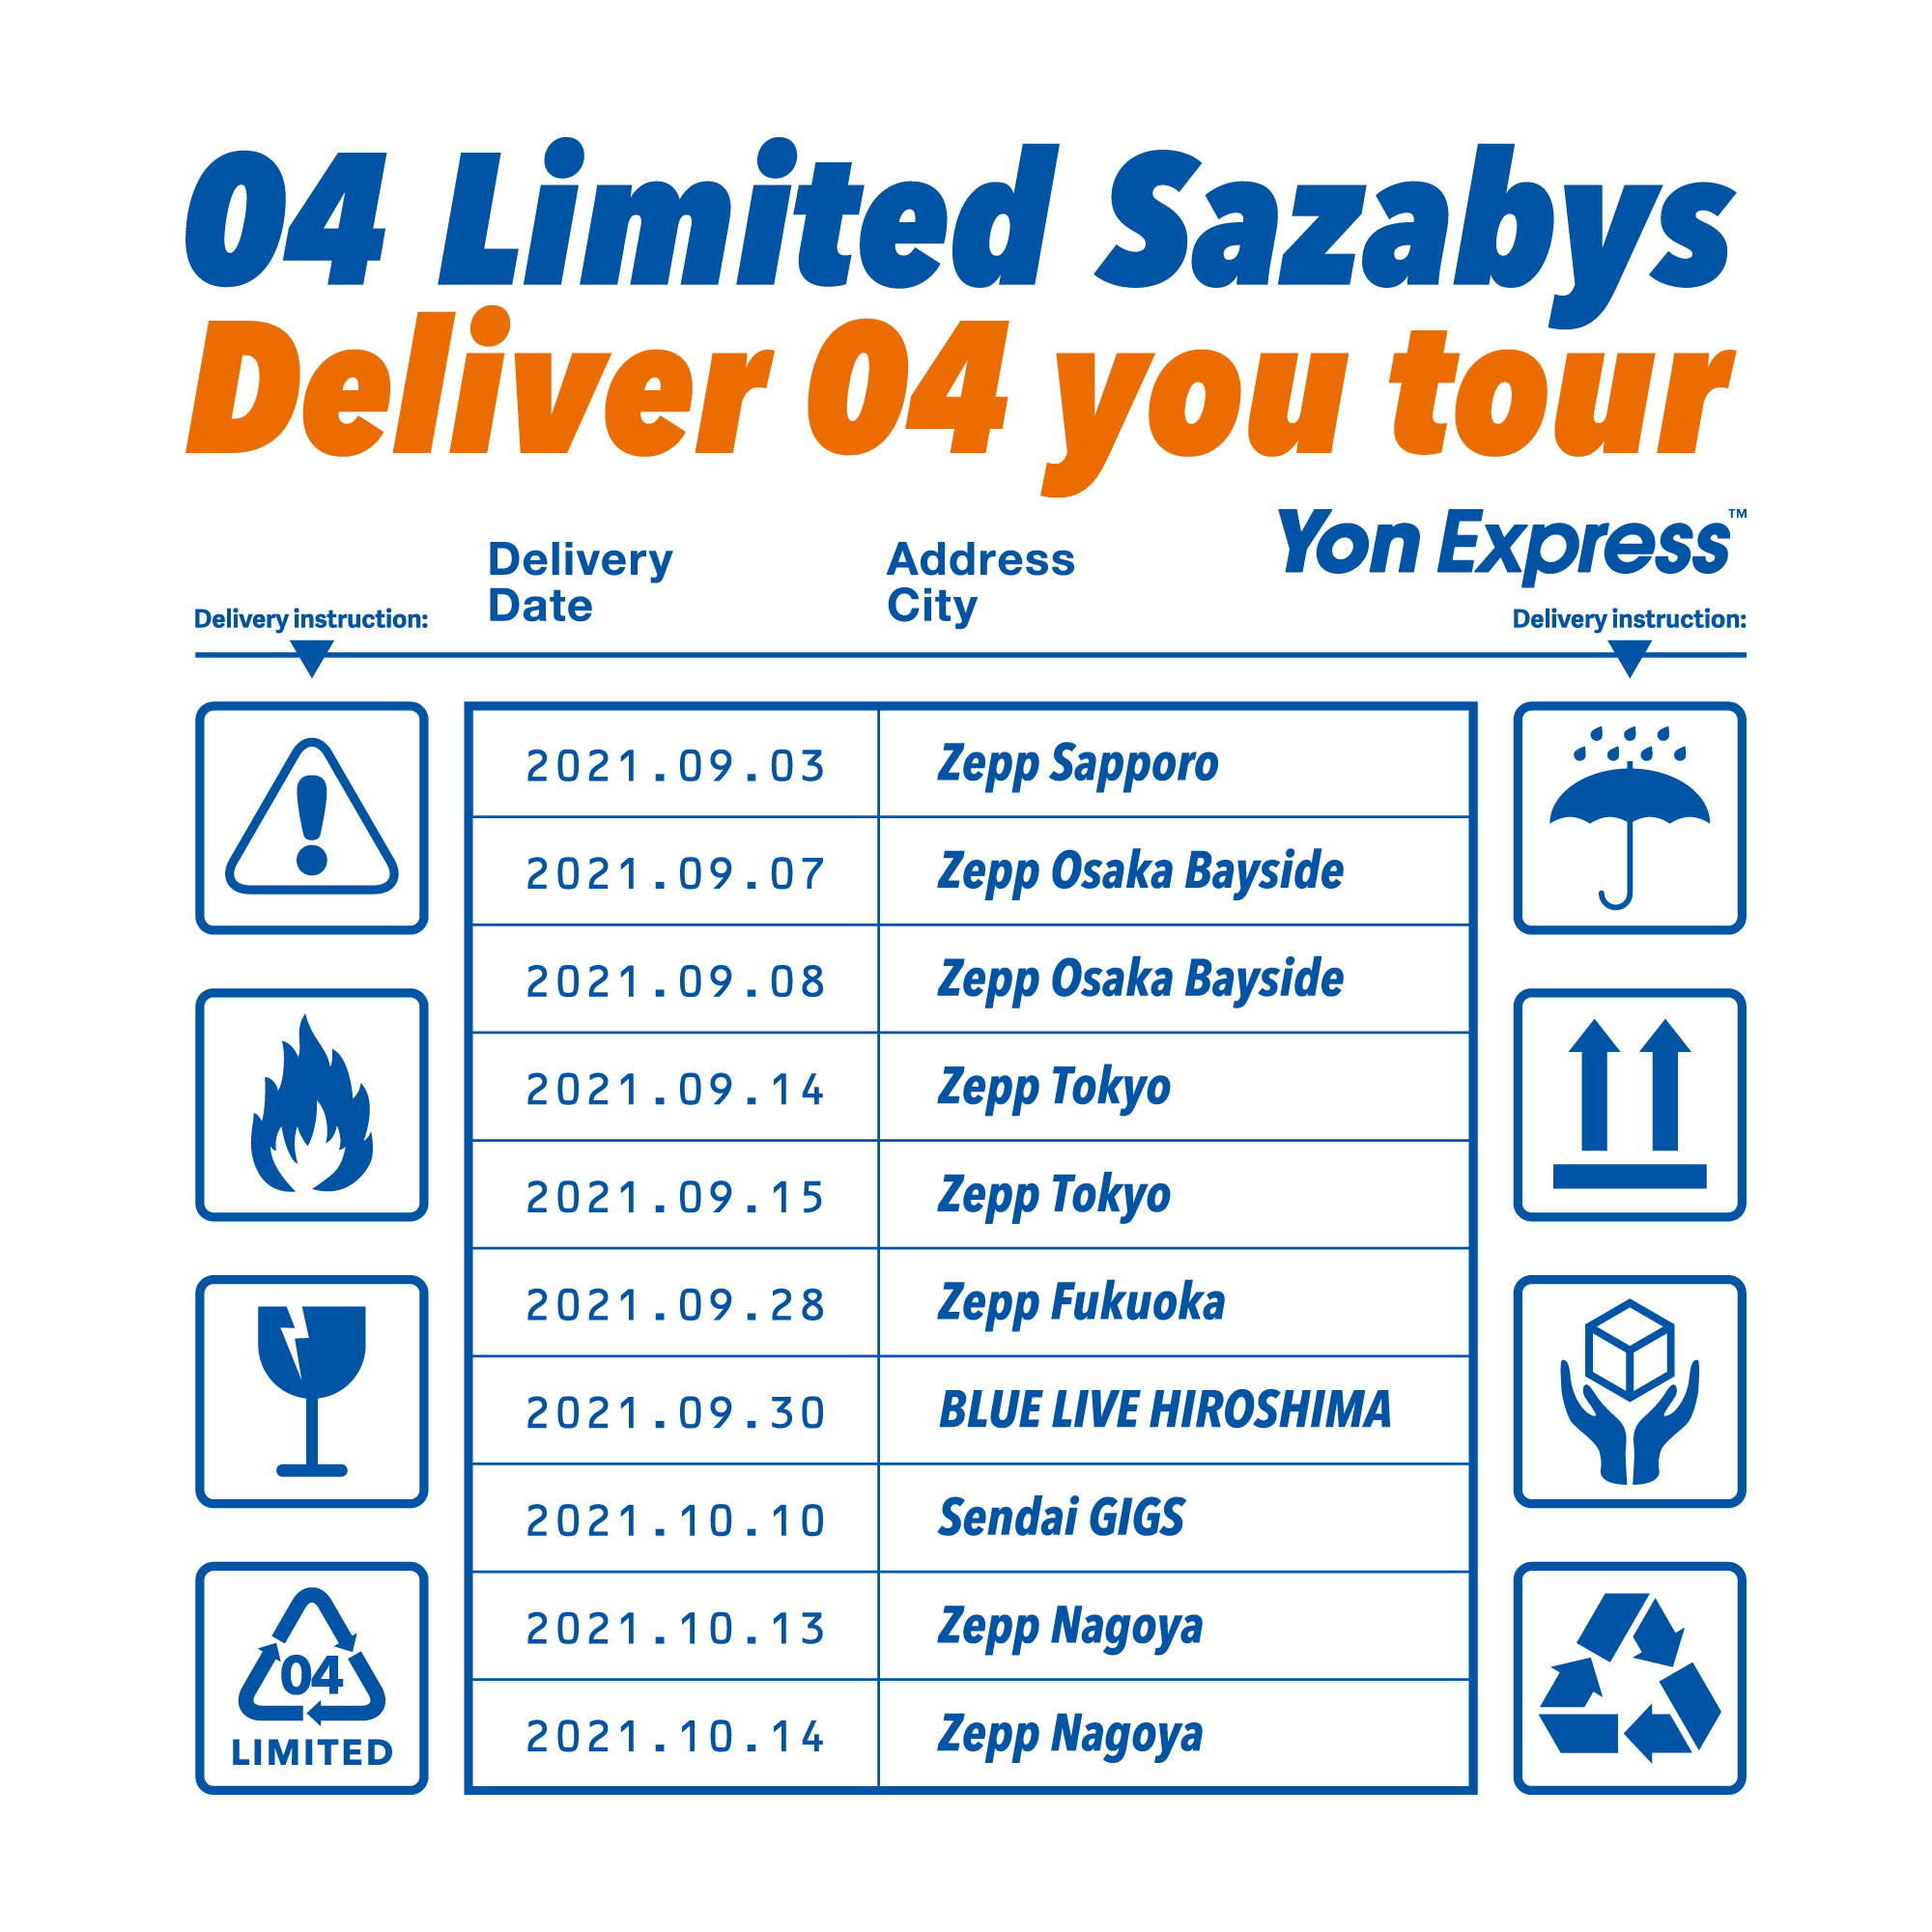 【東京】Deliver 04 you tour (Zepp Tokyo)